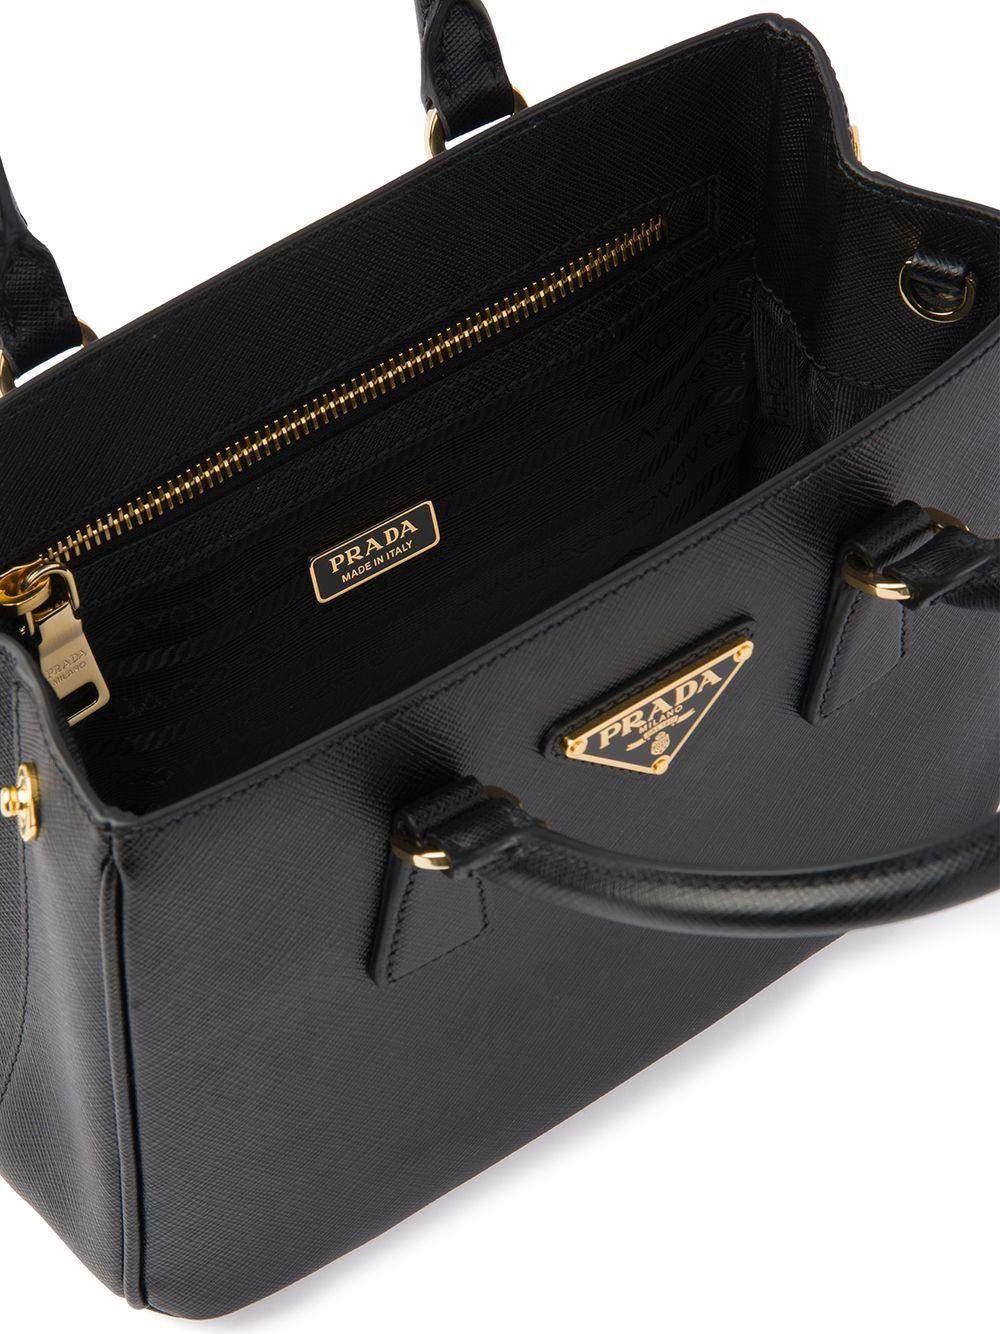 Prada Saffiano Tote Bag in Black | Lyst